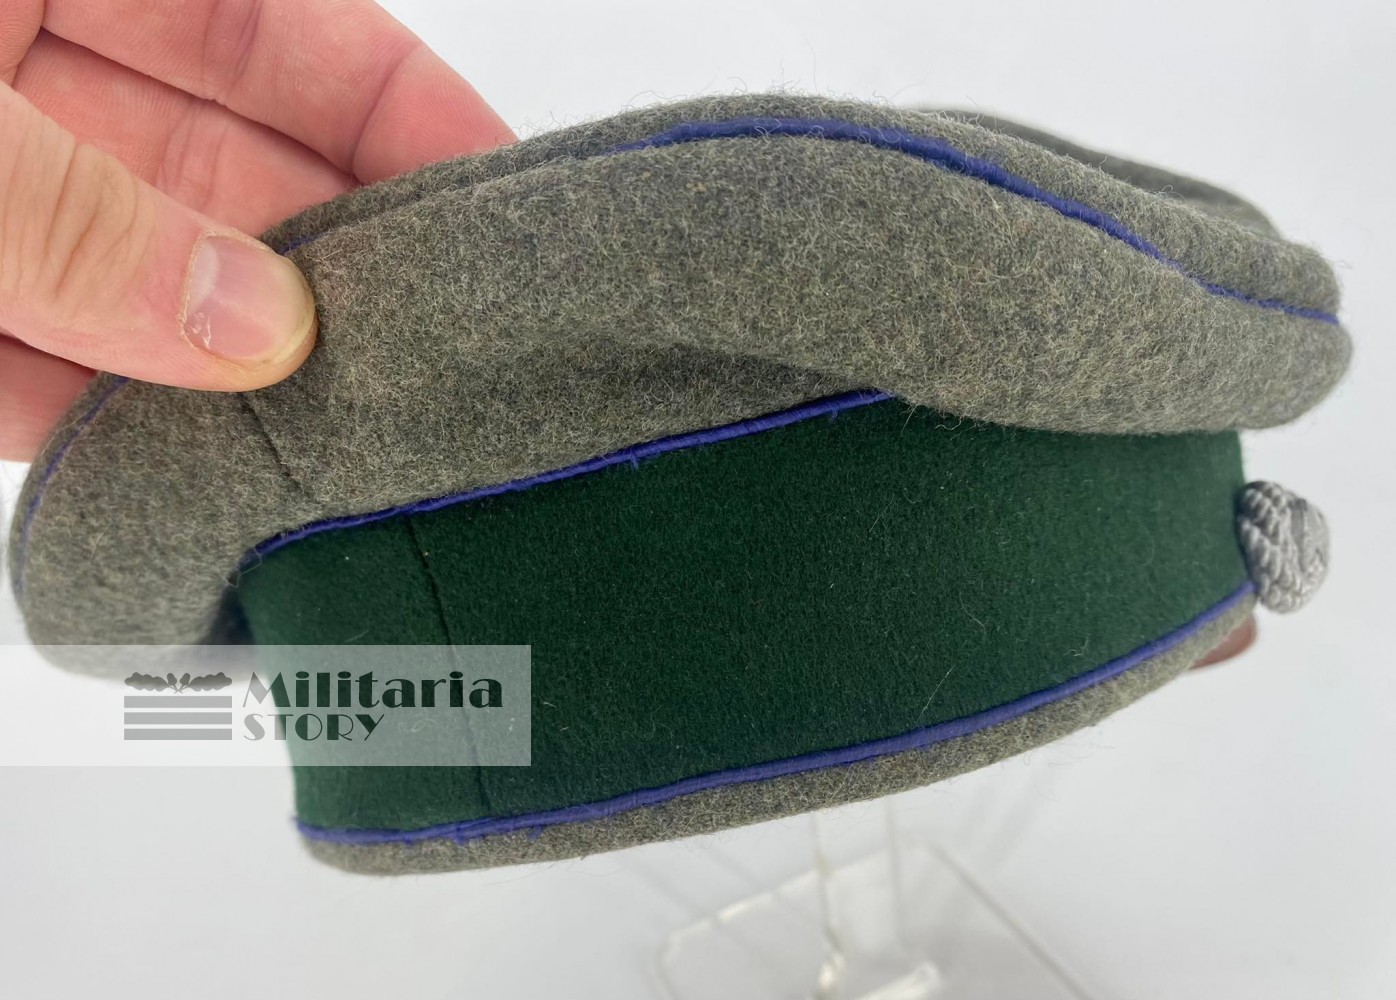 Heer Medical Officer visor cap - Heer Medical Officer visor cap: WW2 German Headgear